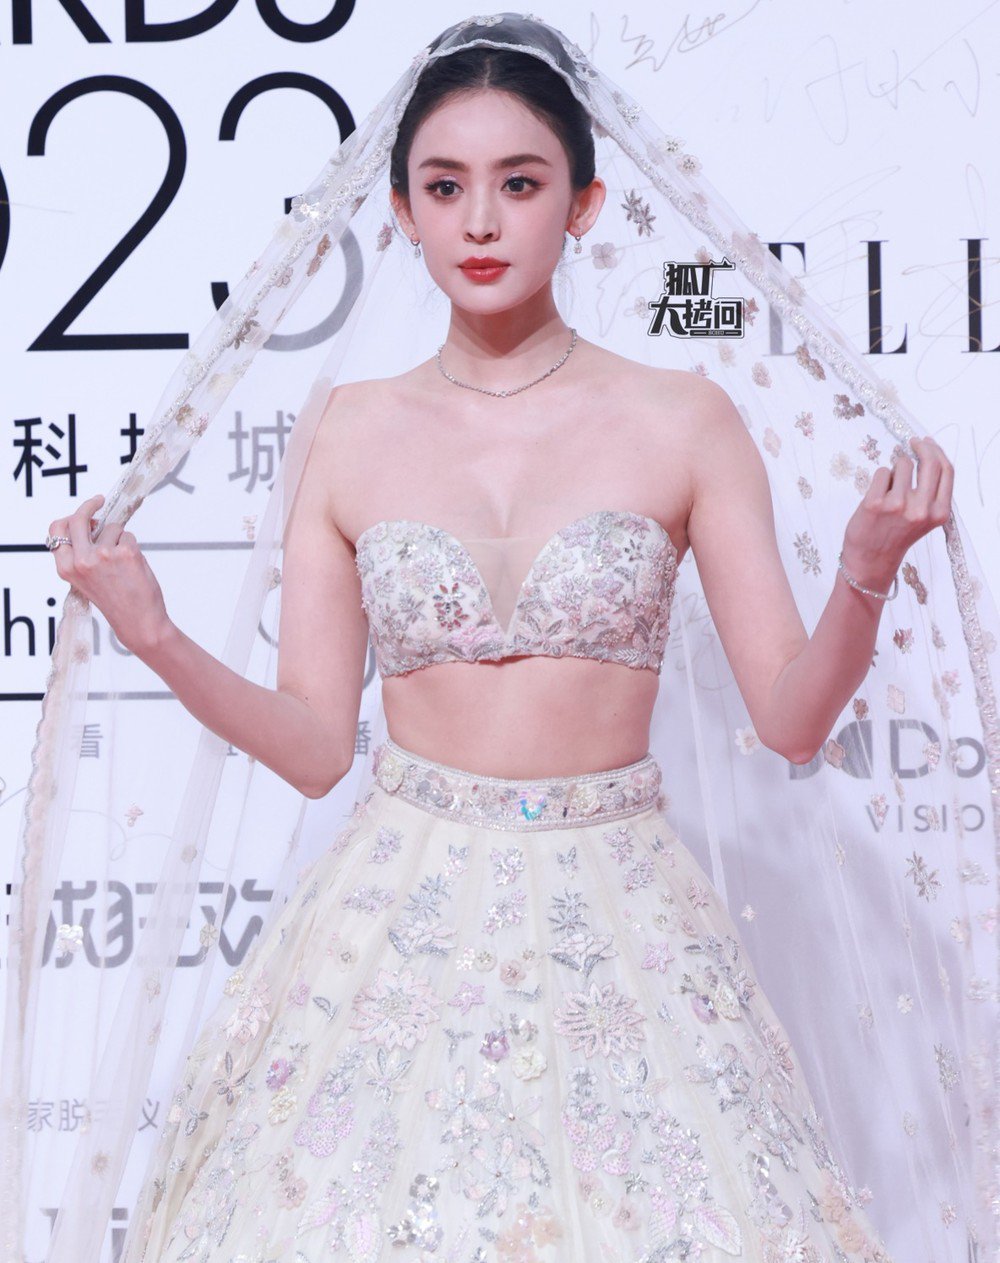 "Tiên nữ tộc người đẹp nhất Trung Quốc" mặc monokini, hiếm hoi khoe hình thể nuột nà - 6